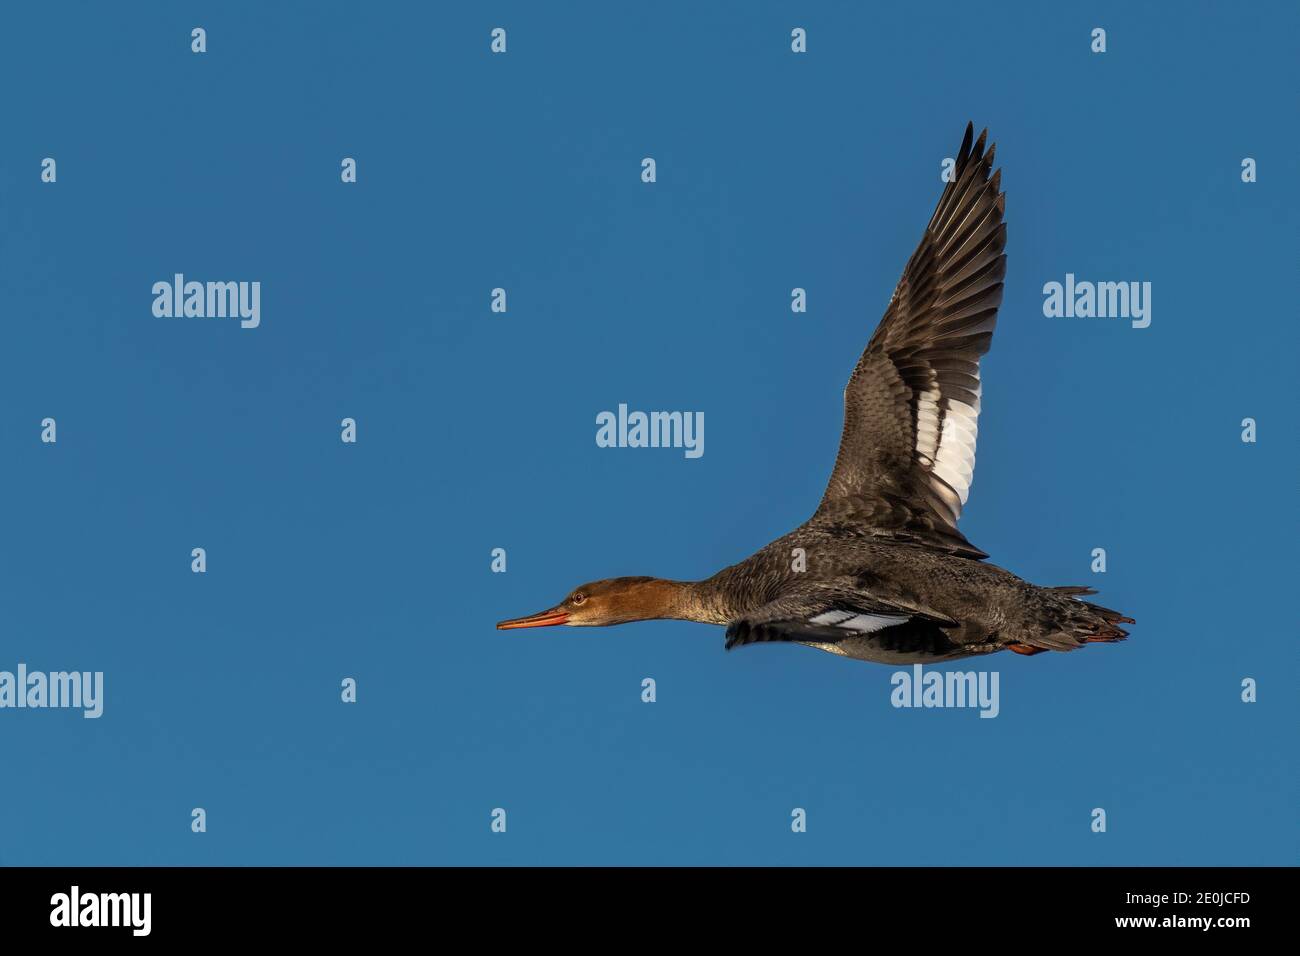 common merganser flying over water Stock Photo